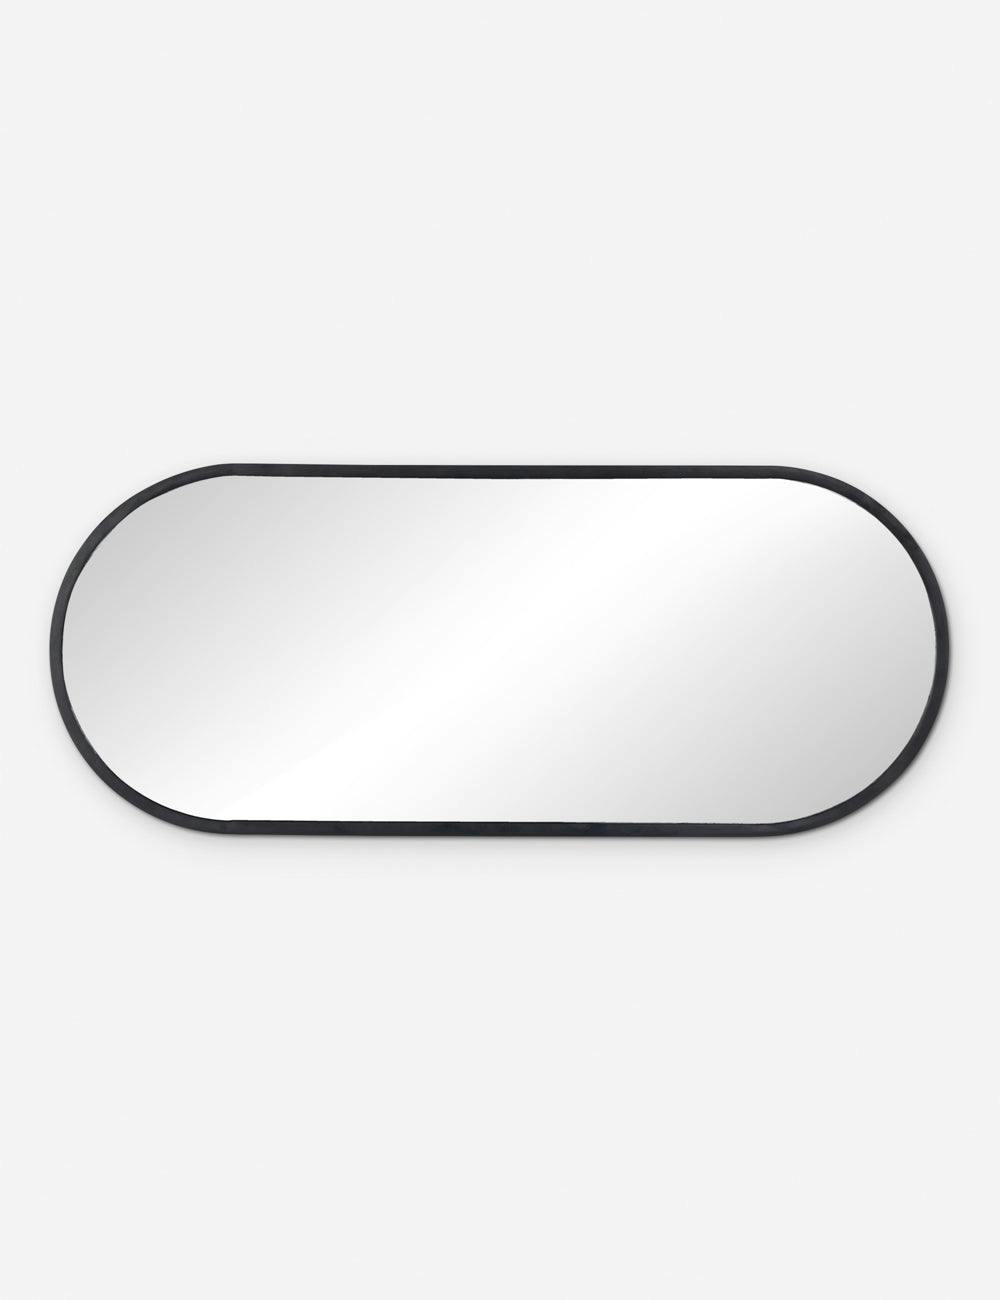 Sleek Rectangular Full-Length Mirror in Matte Black